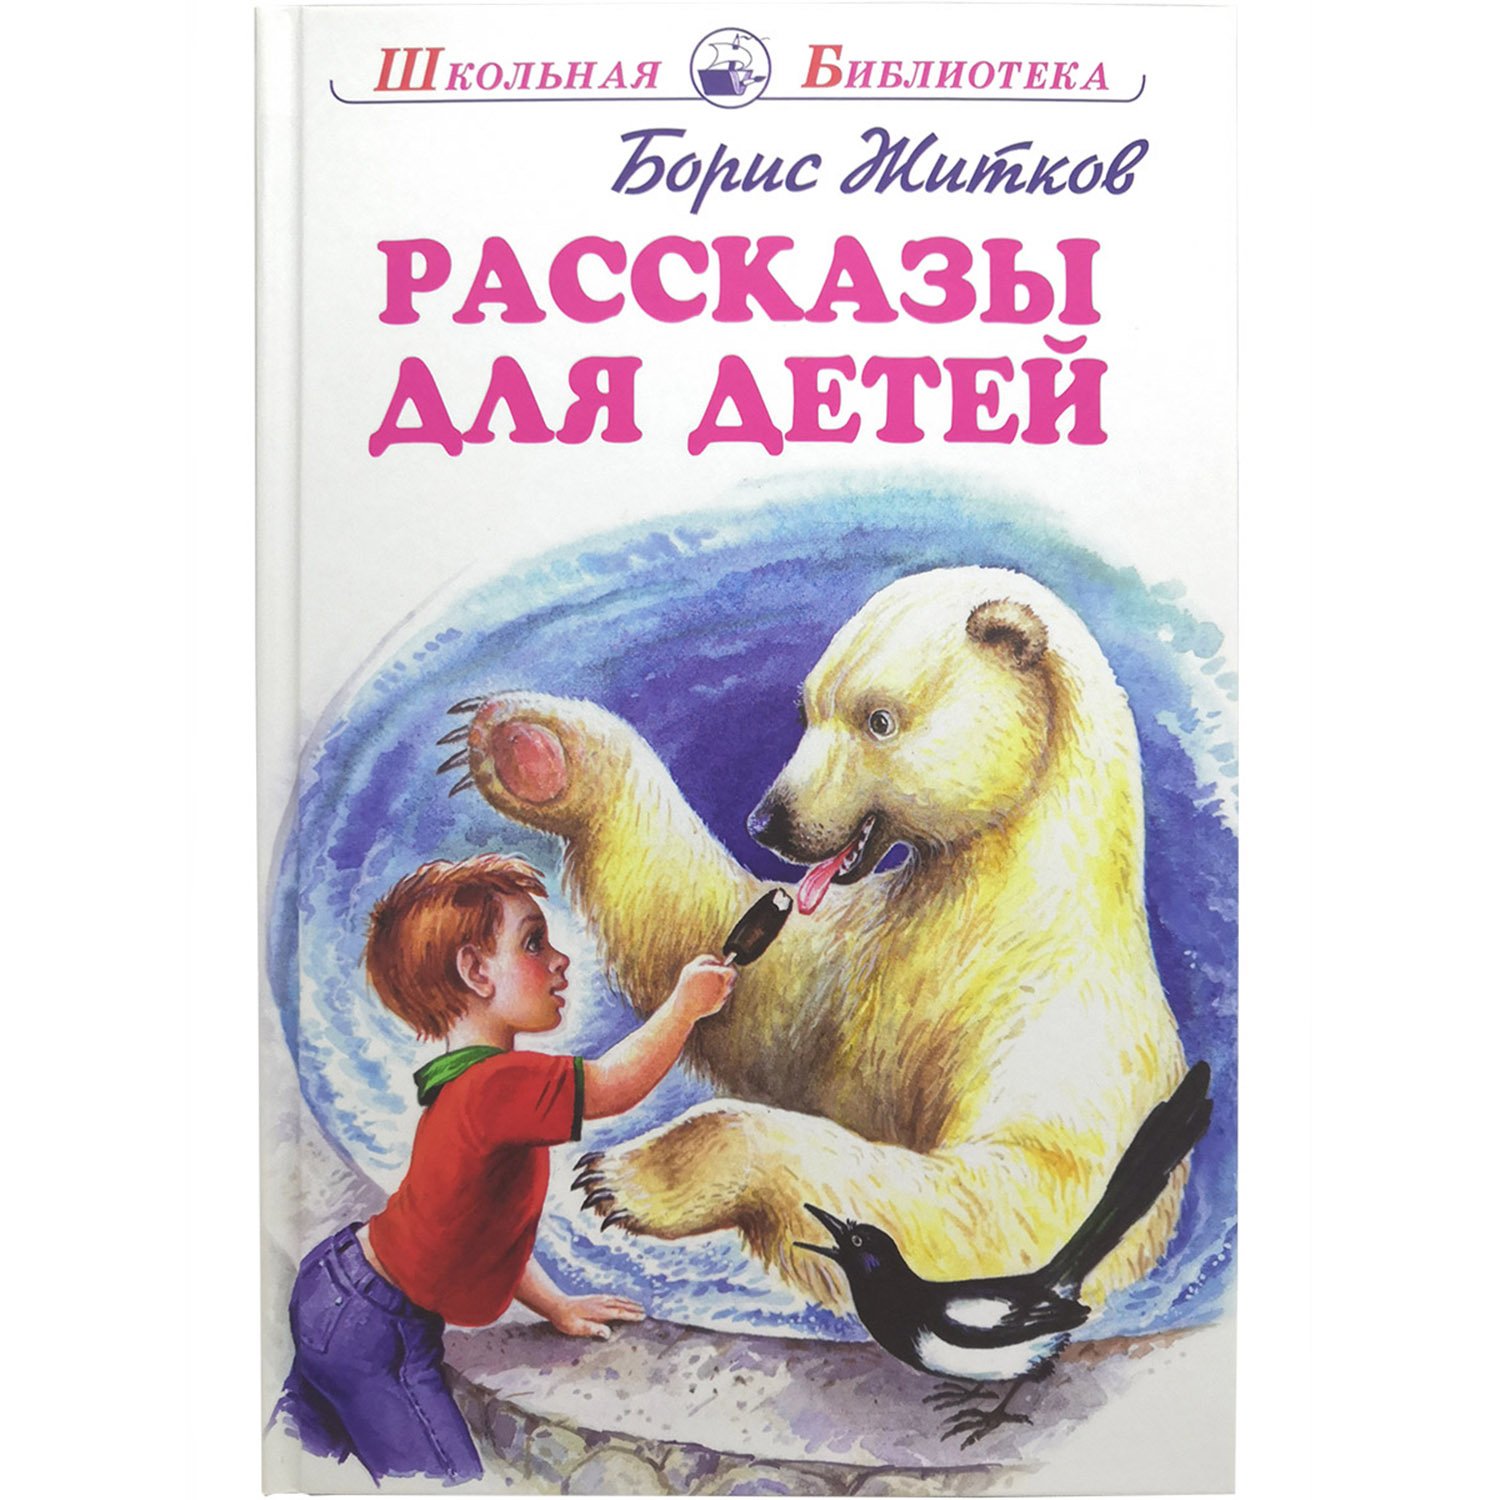 Книга б Житкова рассказы для детей